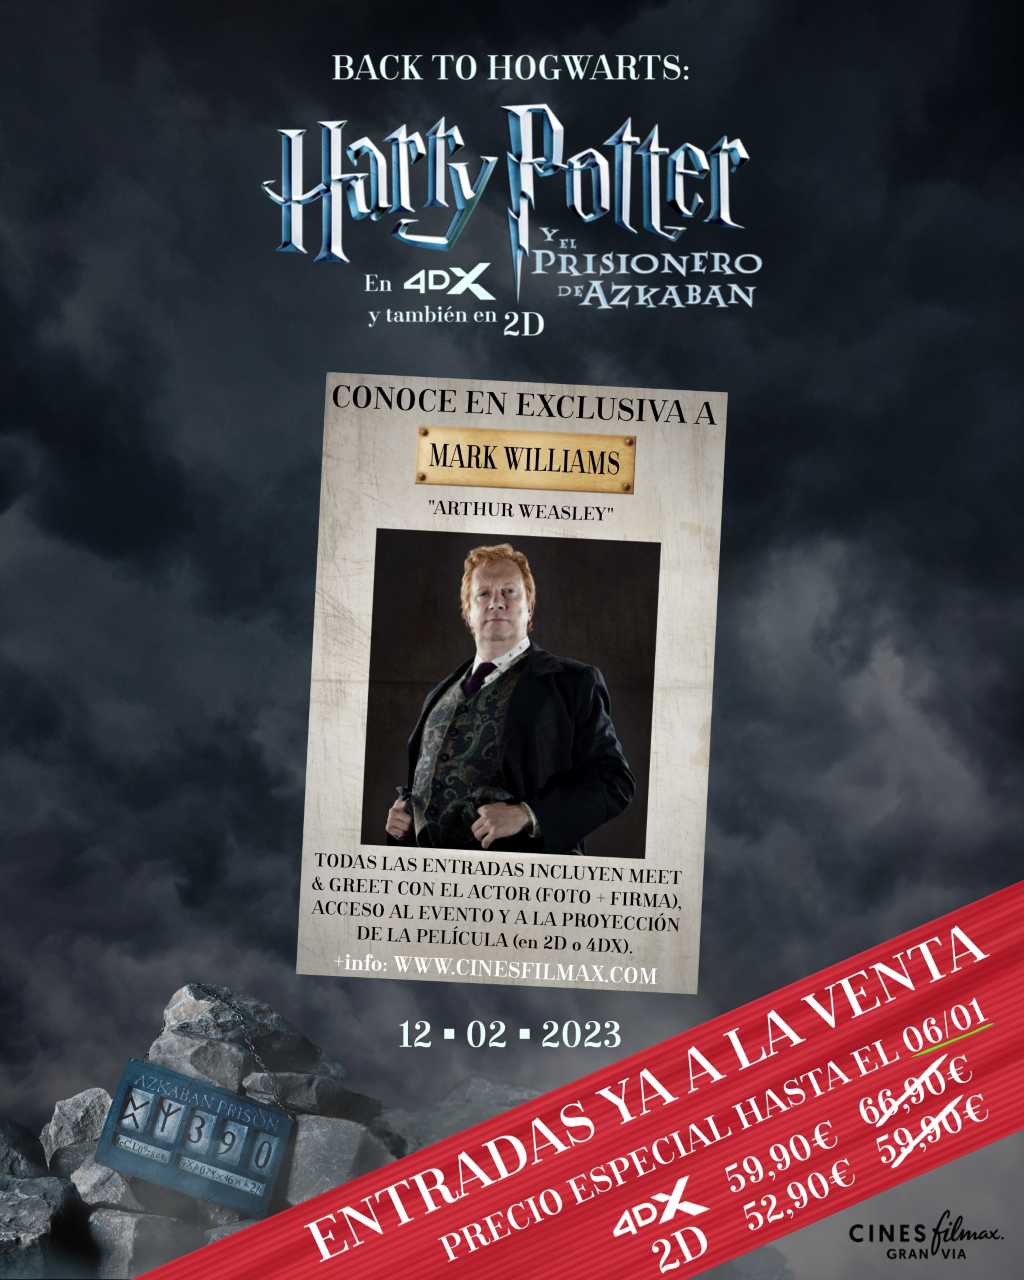 ⚡ Evento Harry Potter Back To Hogwarts 3 en Cines Filmax Barcelona I